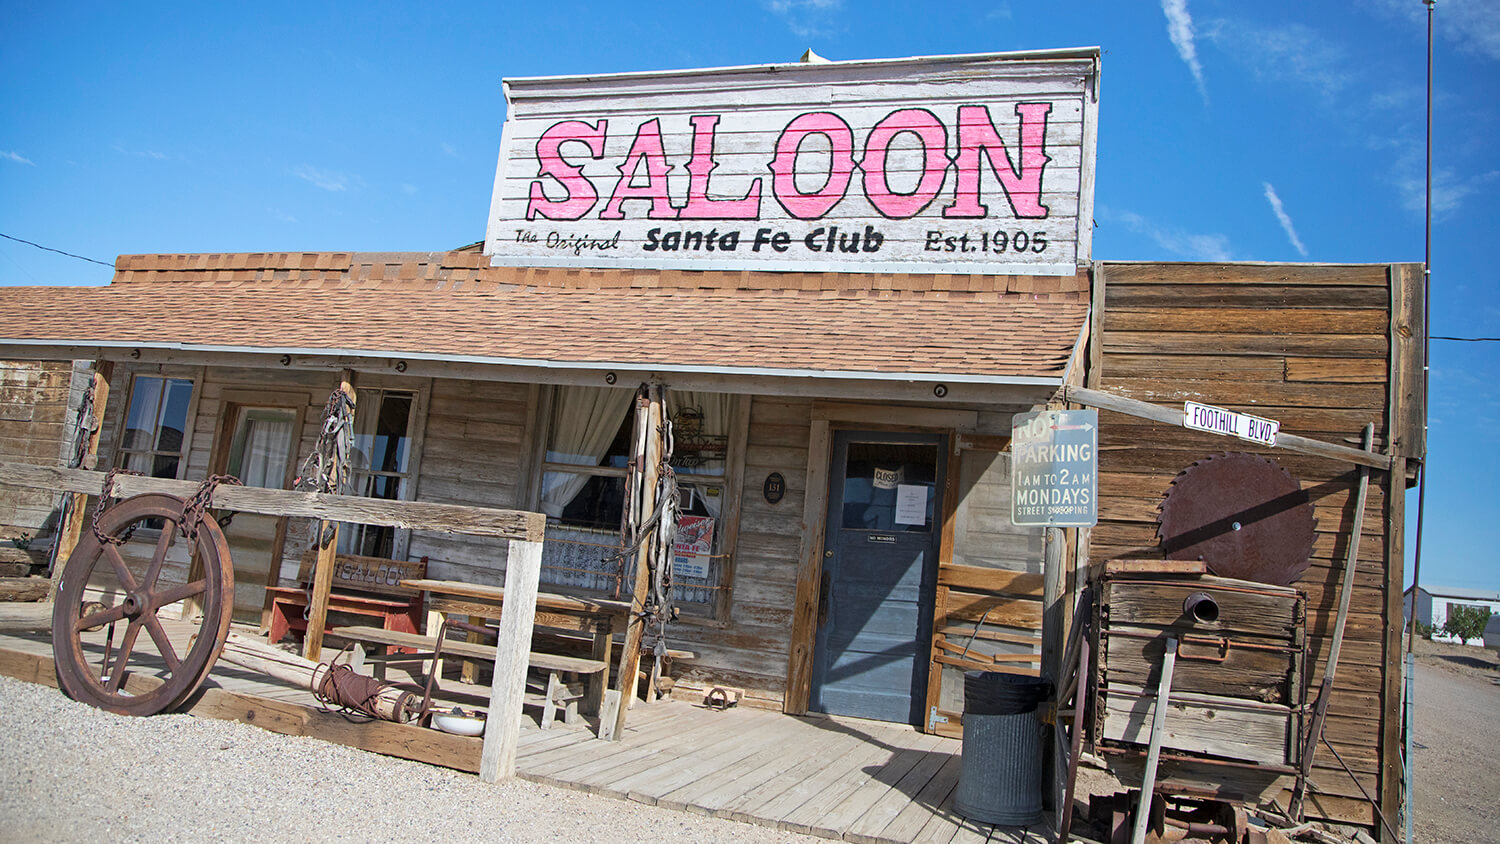 Santa Fe Club Saloon